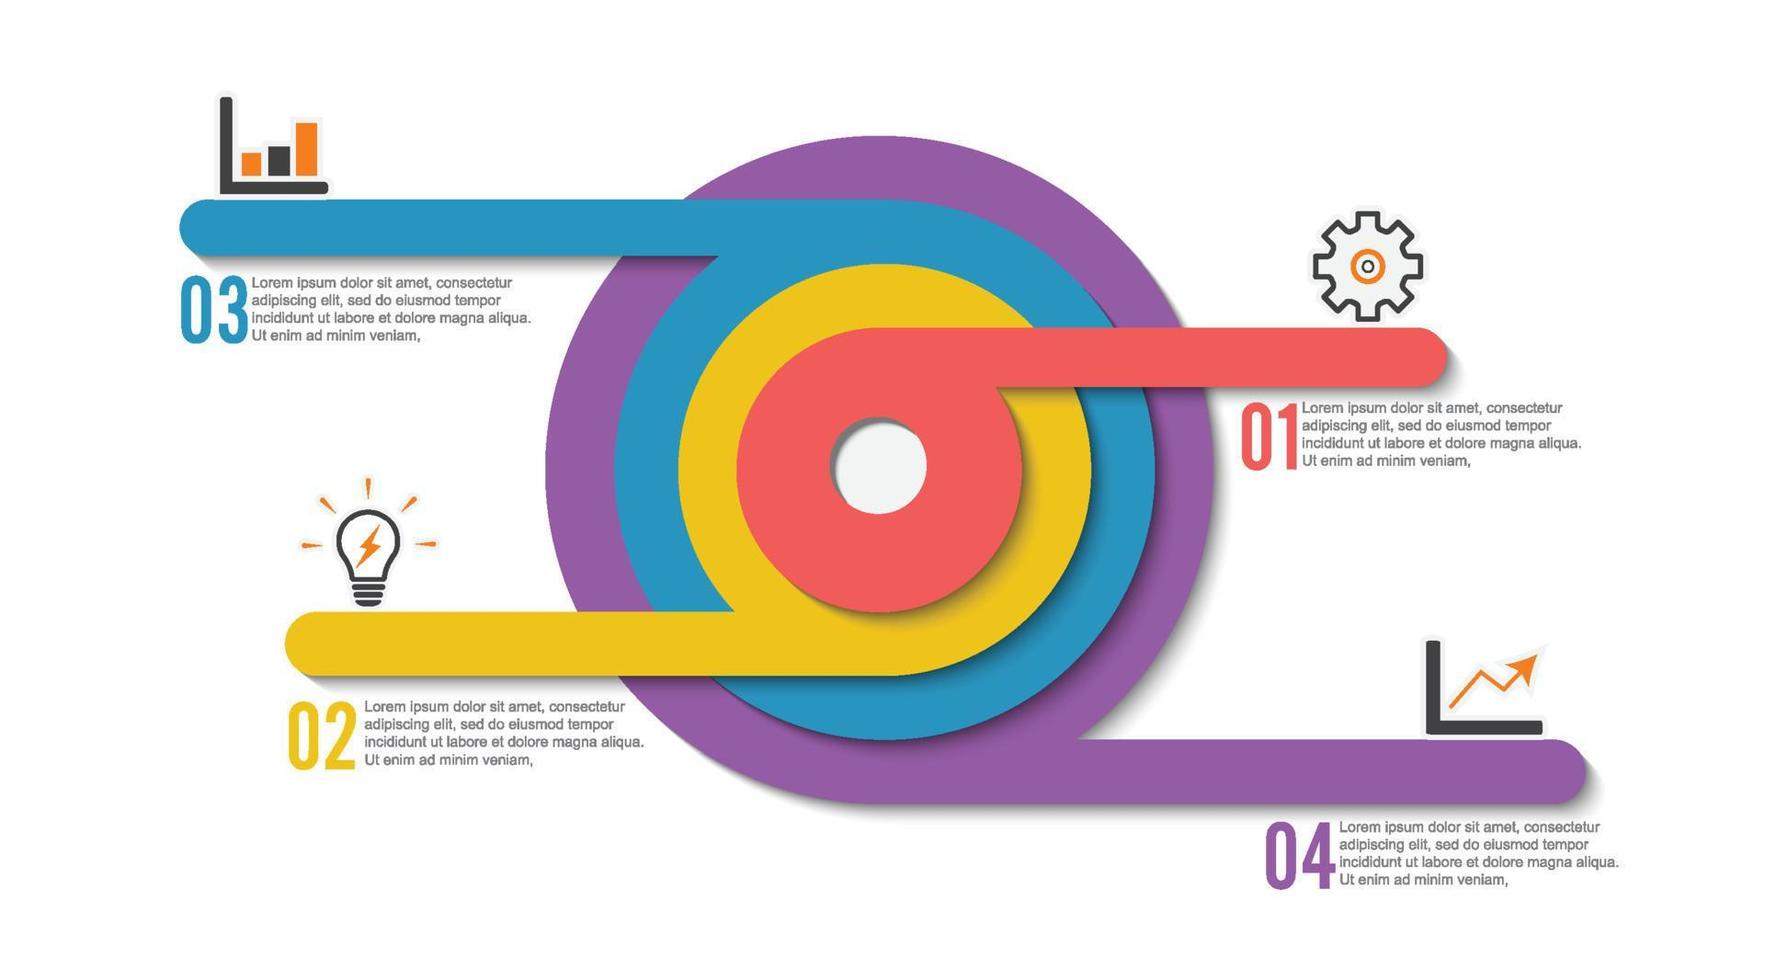 vetor de design infográfico e ícones de marketing podem ser usados para layout de fluxo de trabalho, diagrama, relatório anual, web design. conceito de negócio com 4 opções, etapas ou processos.